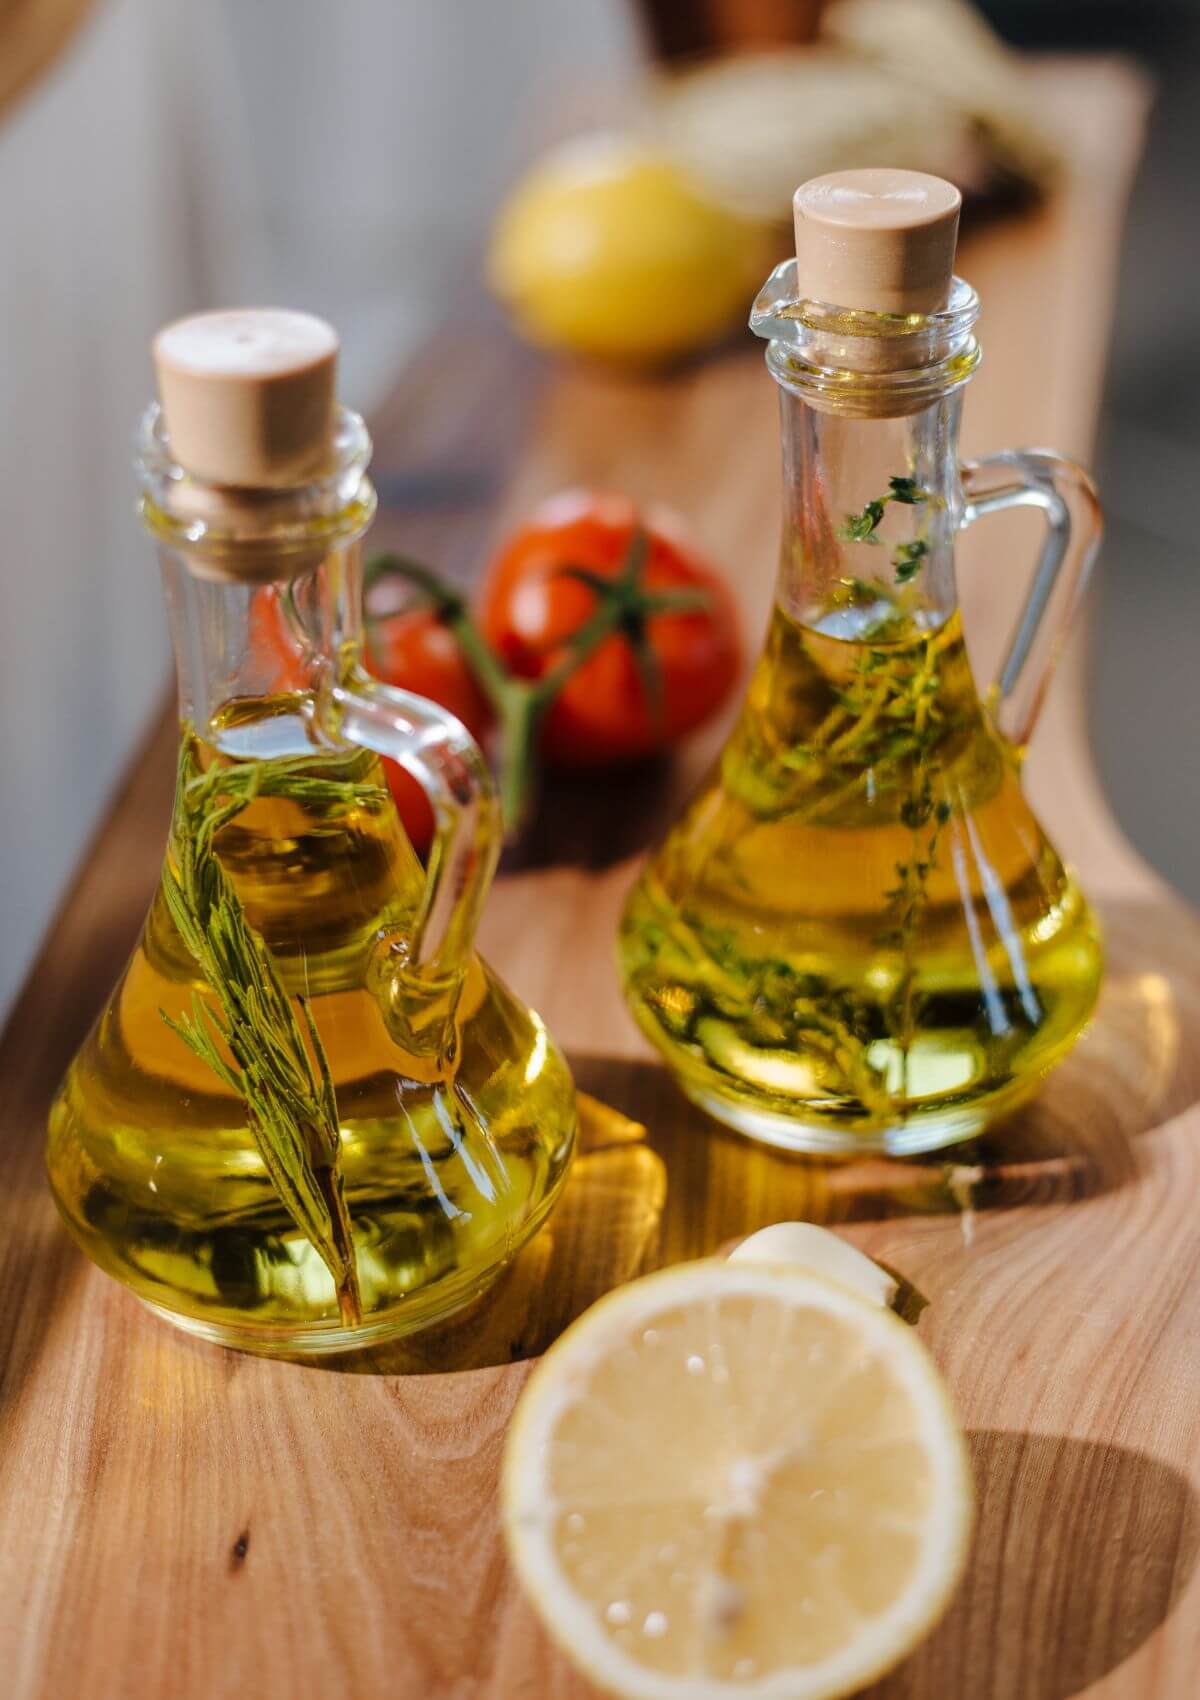 Rome olive oil souvenirs